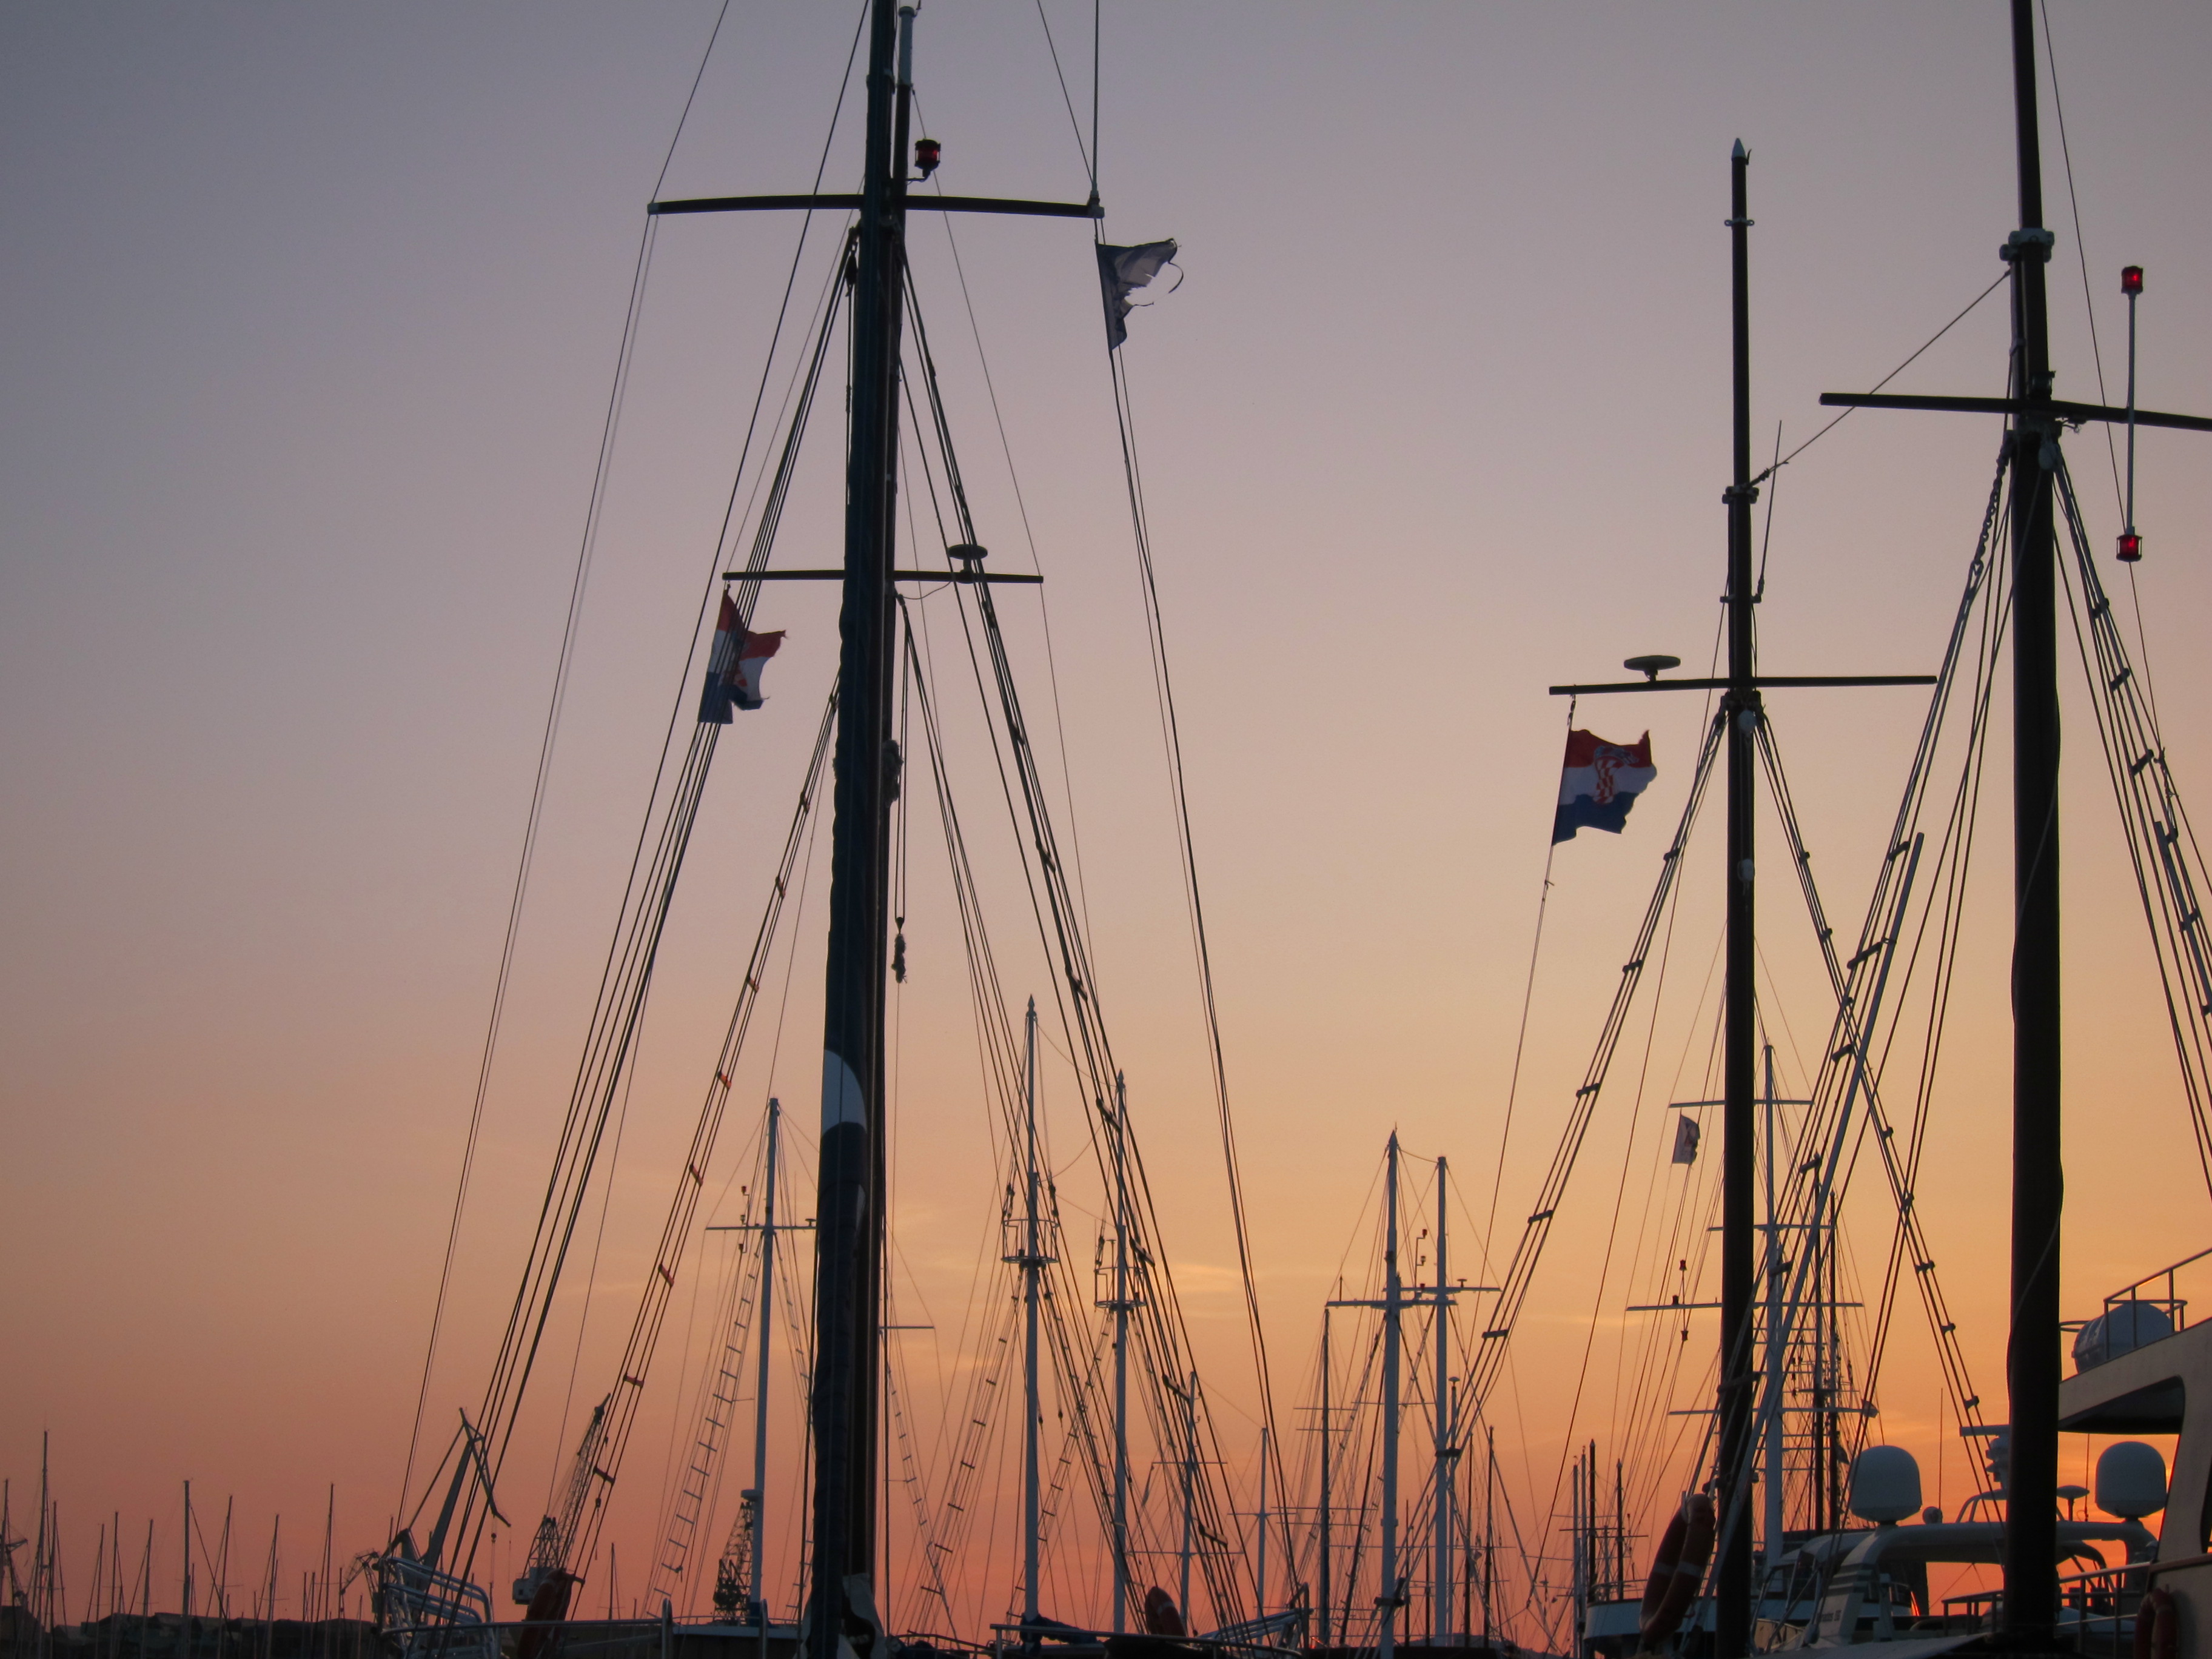 Croatia south dalmatia bike tour sail boats sunset